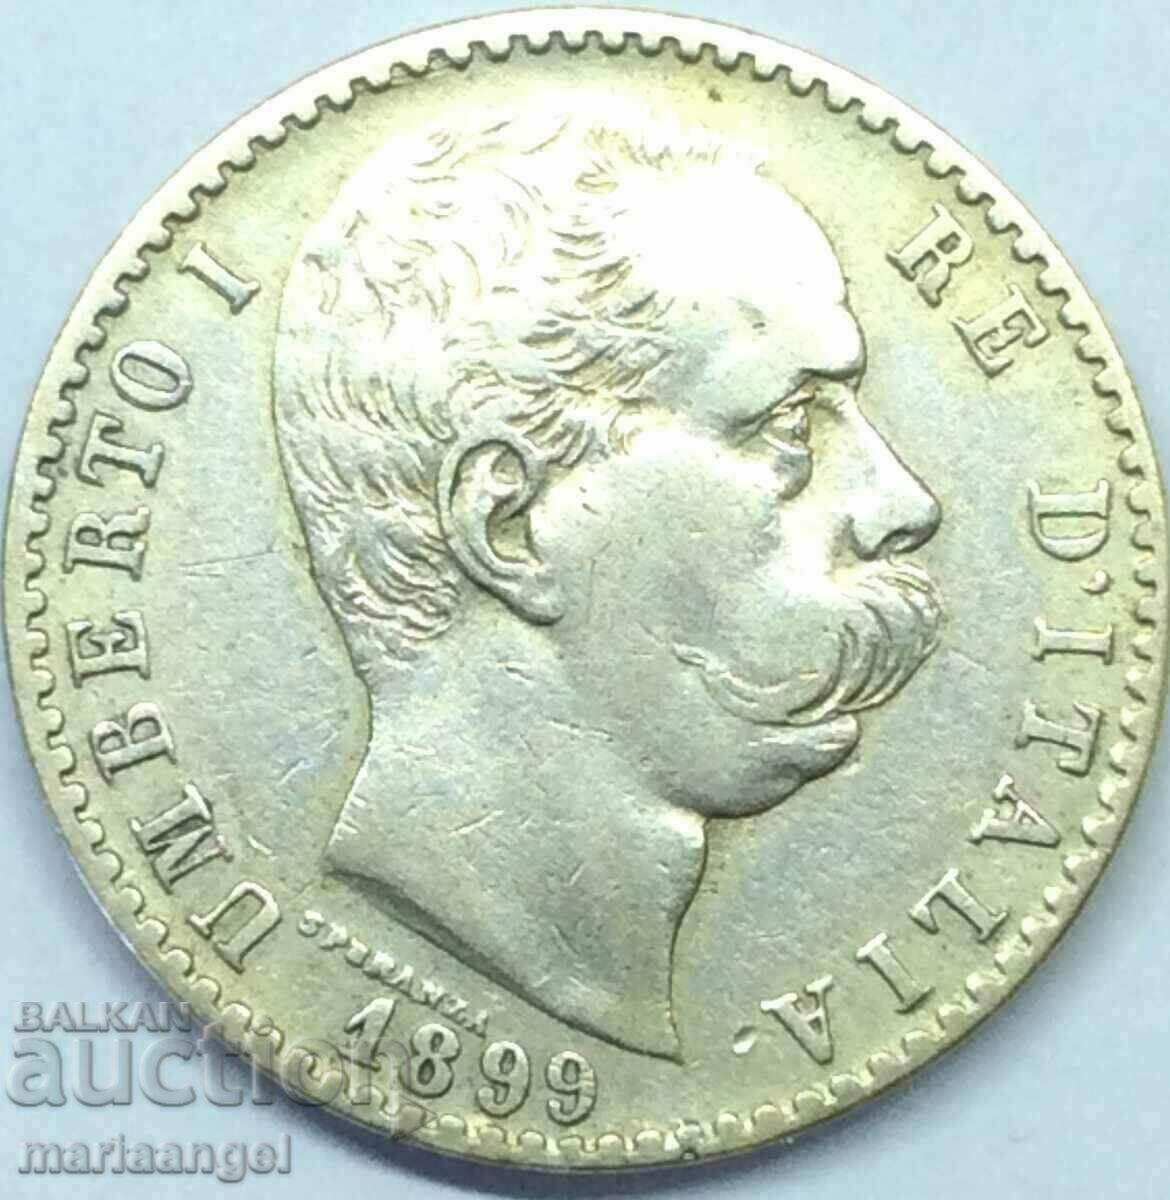 2 lira 1899 Italy Umberto I mint 610K silver